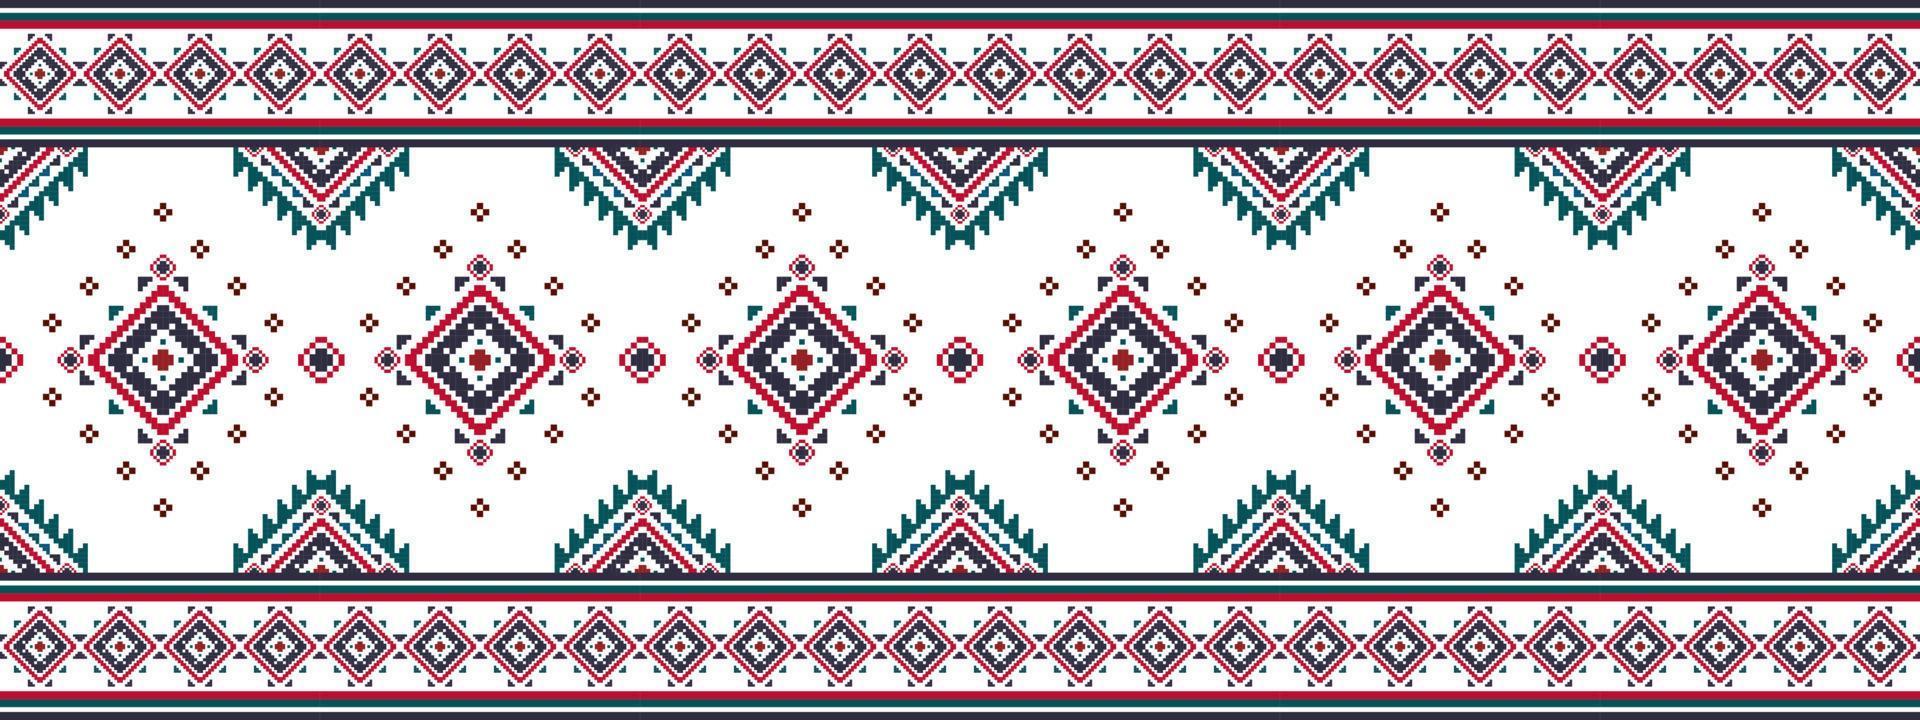 ikat etnisch naadloos patroon huis decoratie ontwerp. aztec kleding stof tapijt boho mandala's textiel decor behang. tribal inheems motief volk traditioneel borduurwerk vector illustraties achtergrond